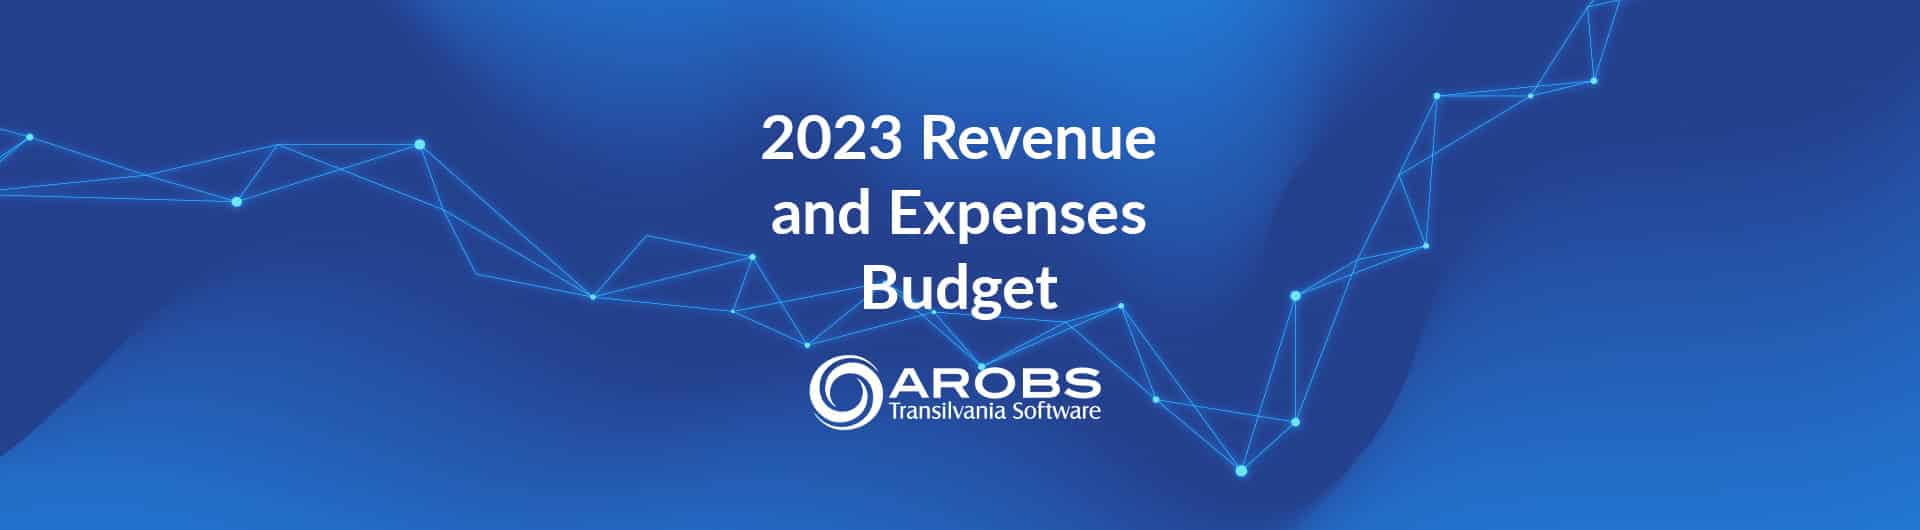 2023 Revenue and Expenses Budget